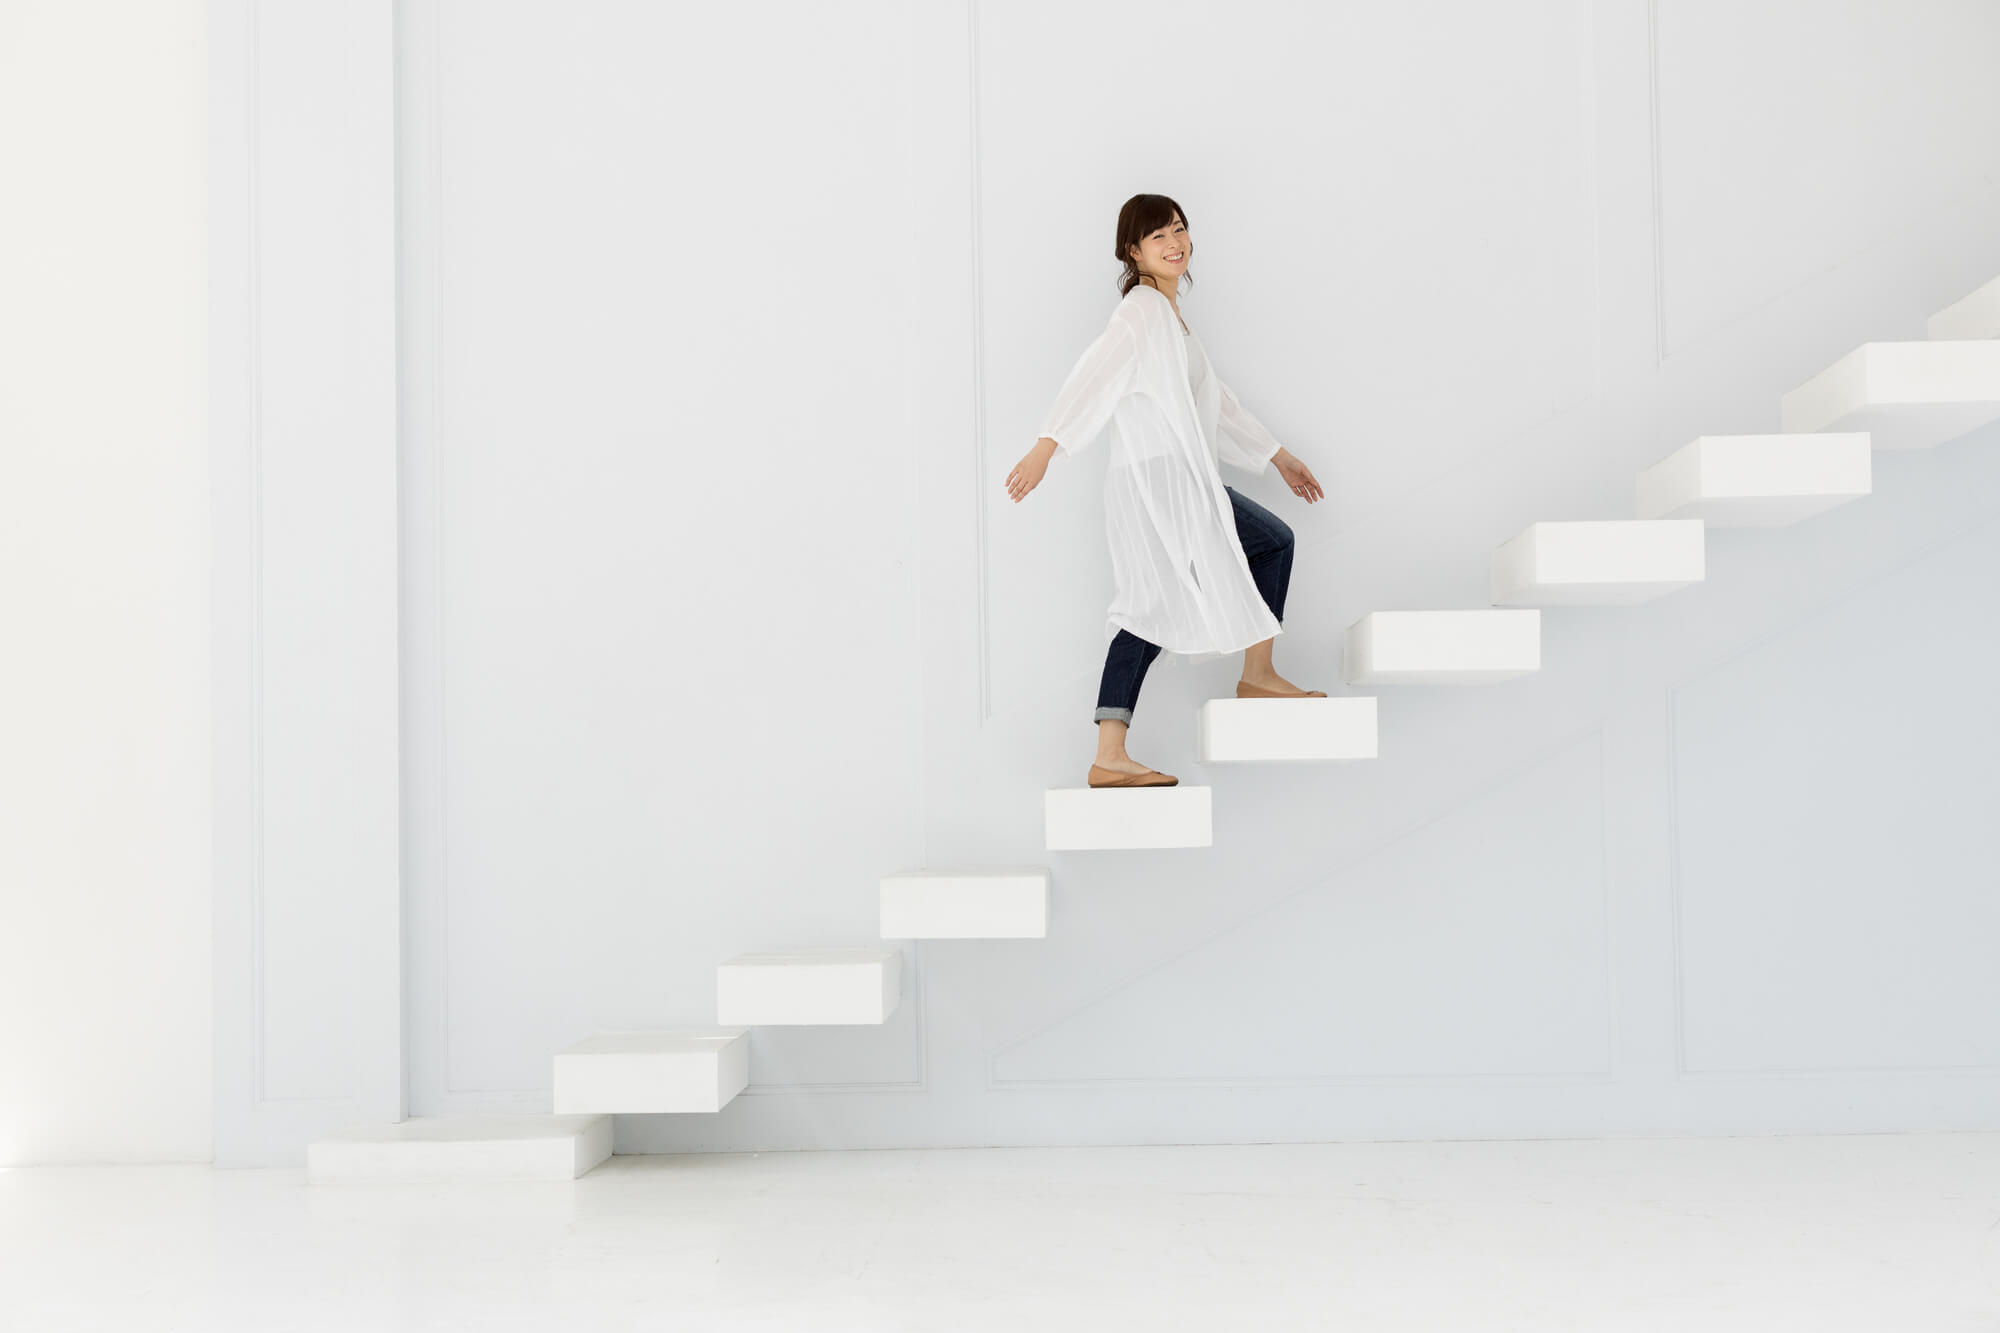 階段を登る女性